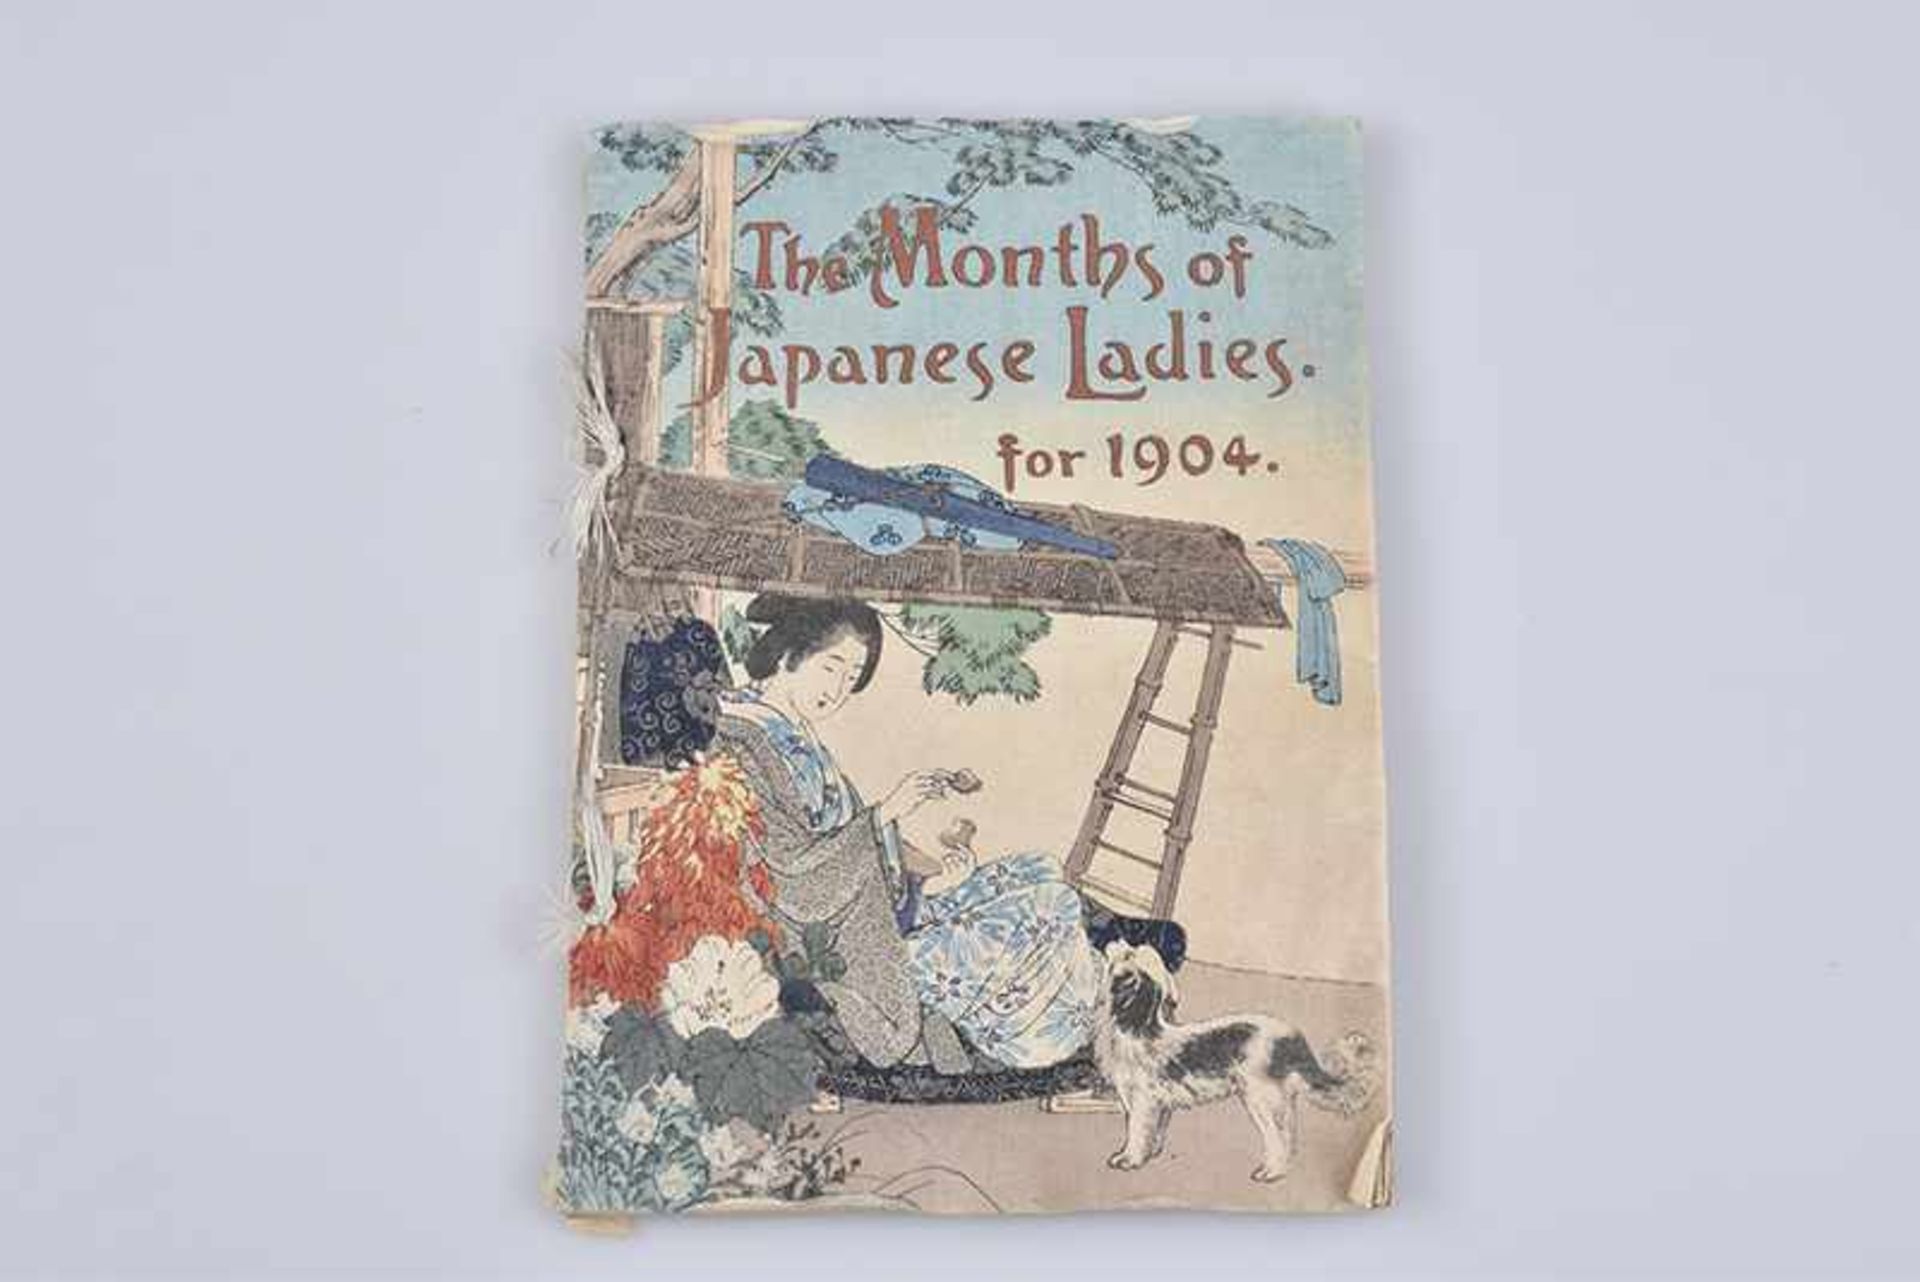 Calendar for 1904 - The Month of Japanese Ladies, "Die Monate der japanischen Damen für 1904",